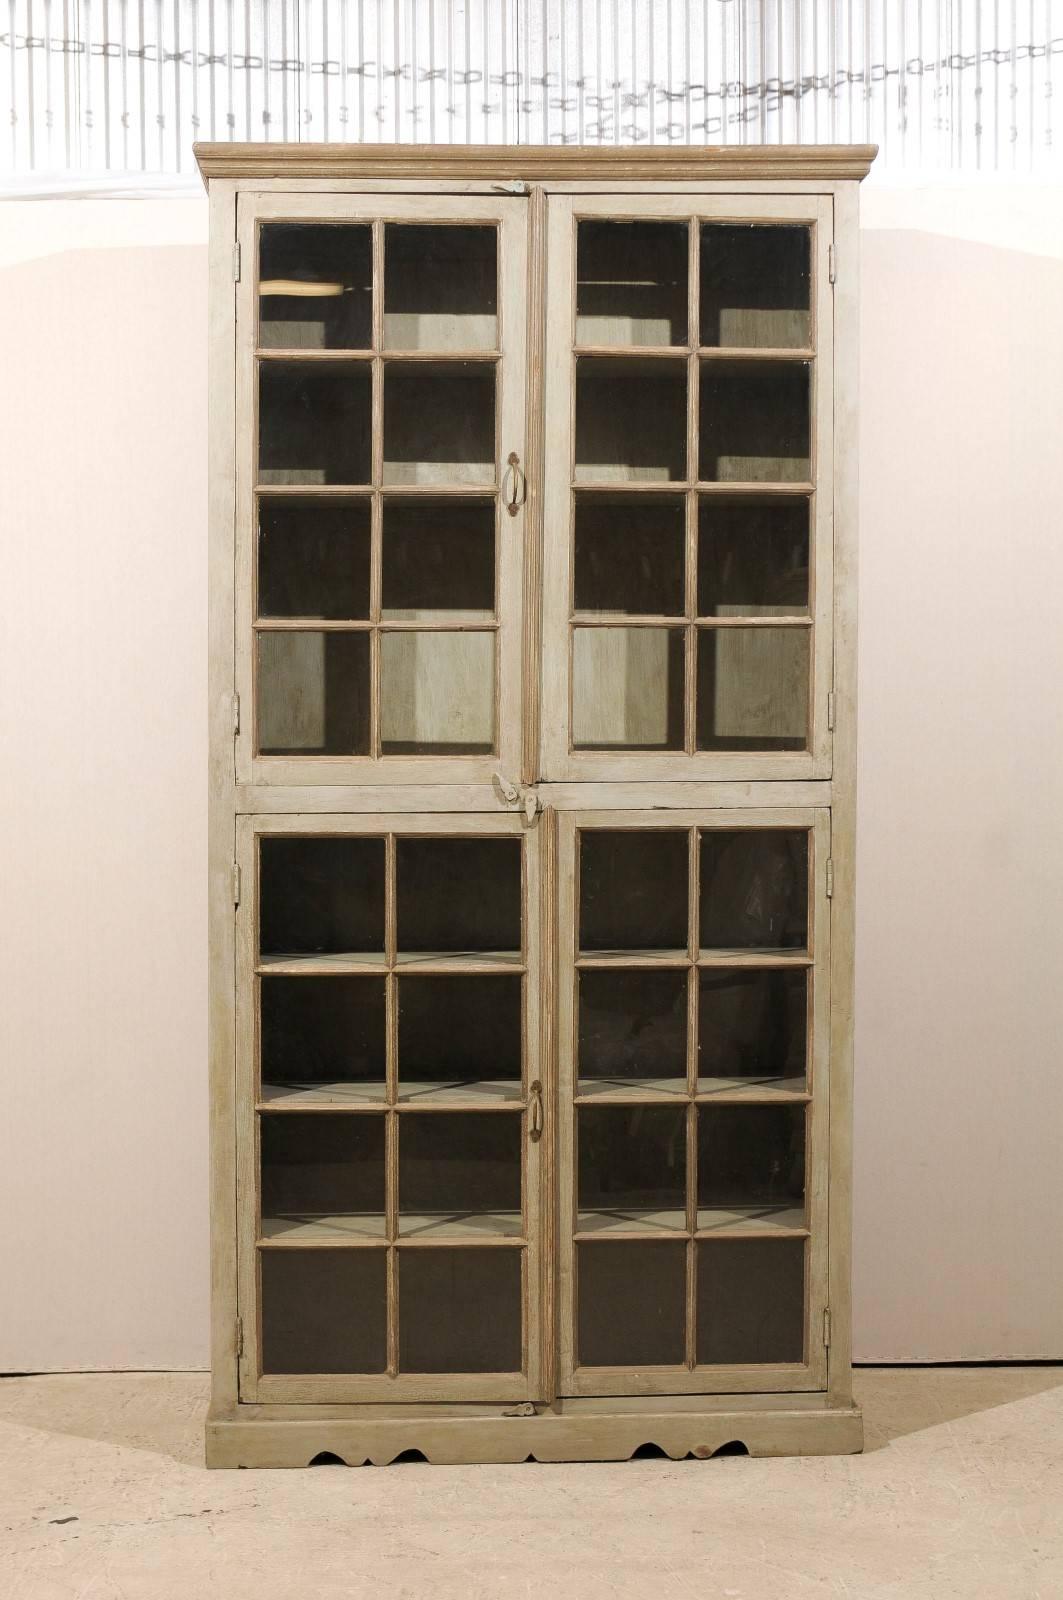 Ein hoher, bemalter Holzschrank mit Glastüren. Dieser Schrank aus lackiertem Holz aus Indien hat ein lineares Profil mit vier Sprossentüren aus Glas. Die Türen öffnen sich zu mehreren Innenfächern. Der Schrank ruht auf einem leicht gewölbten Sockel.